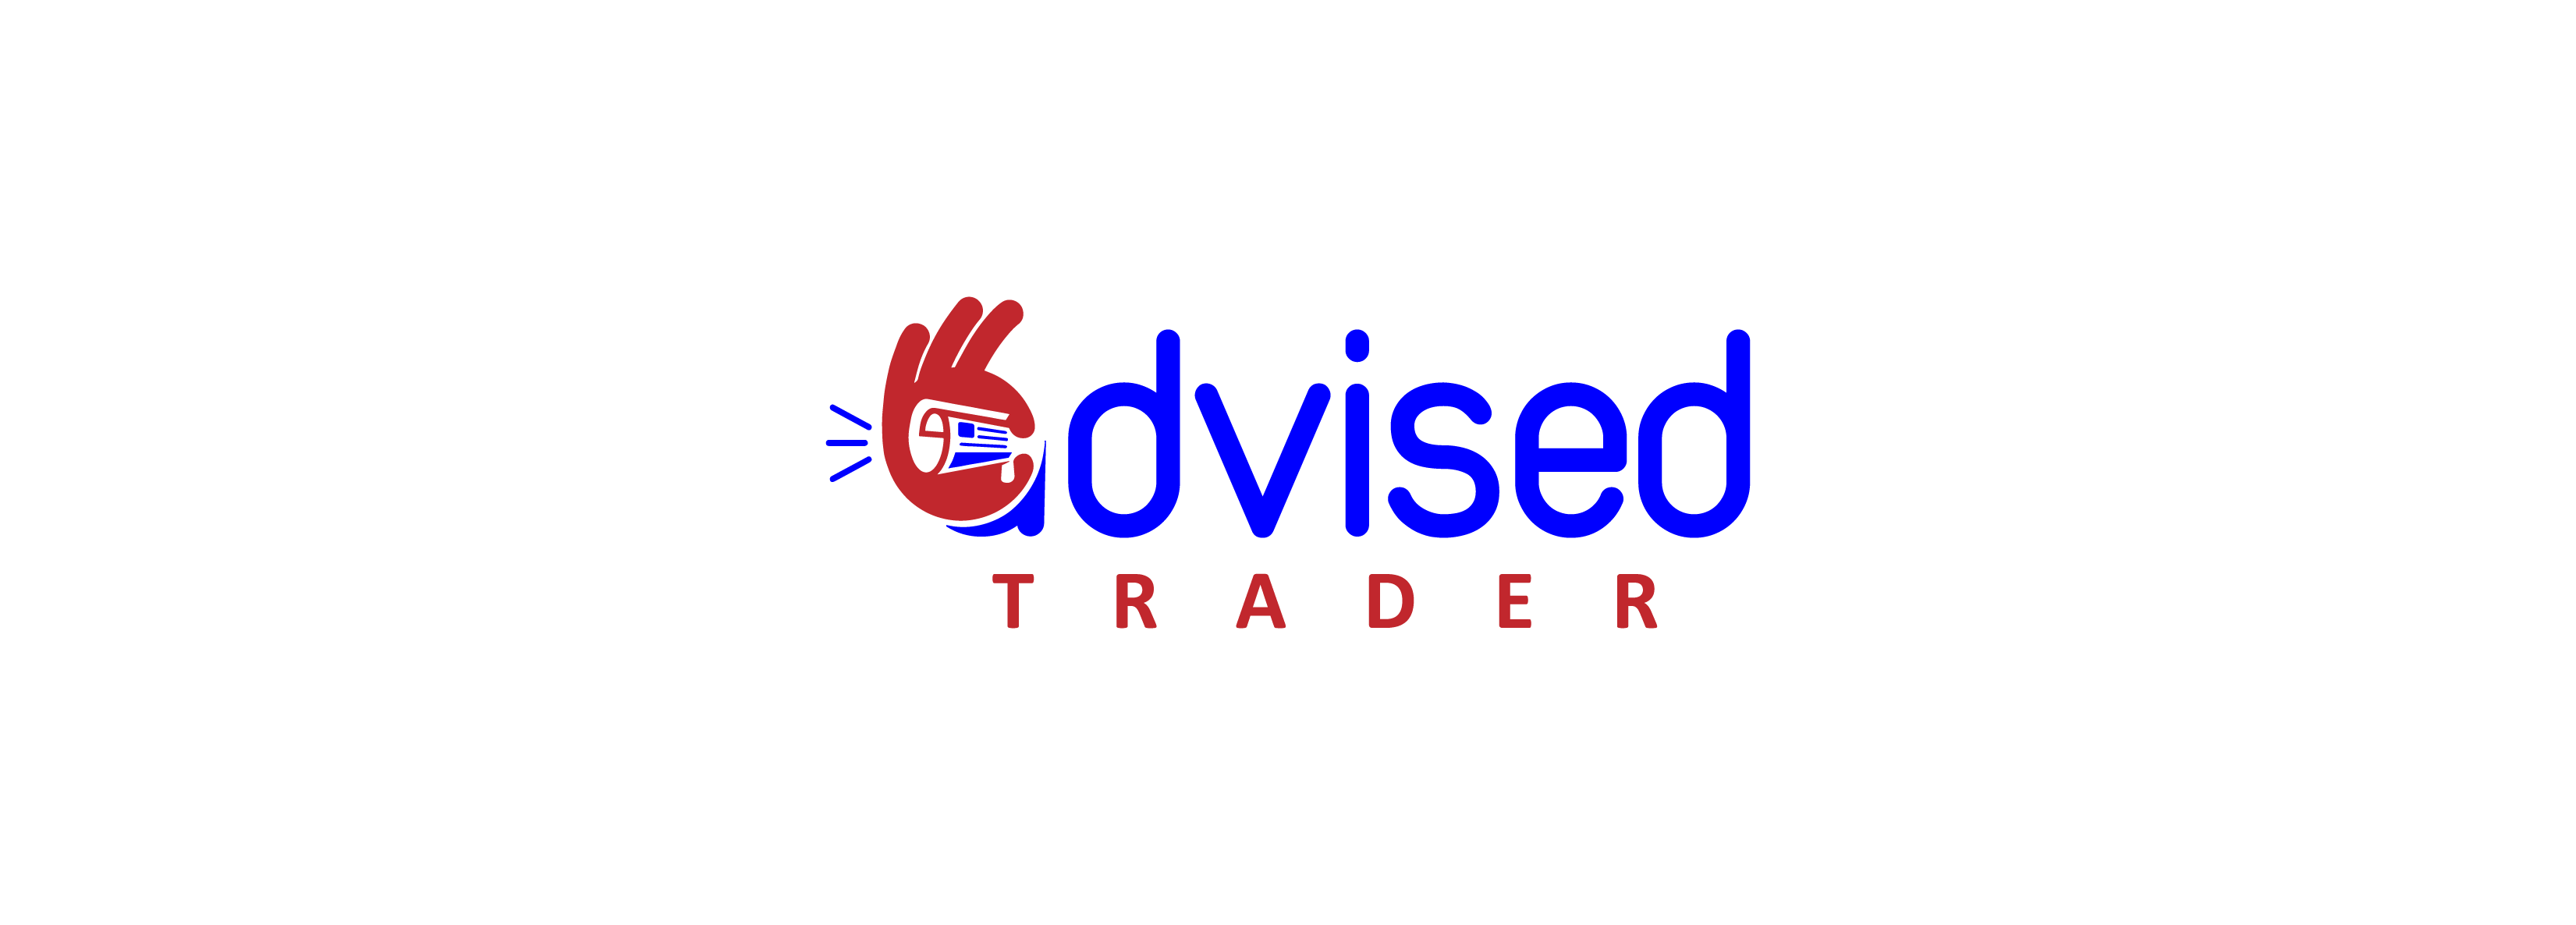 Advised Trader